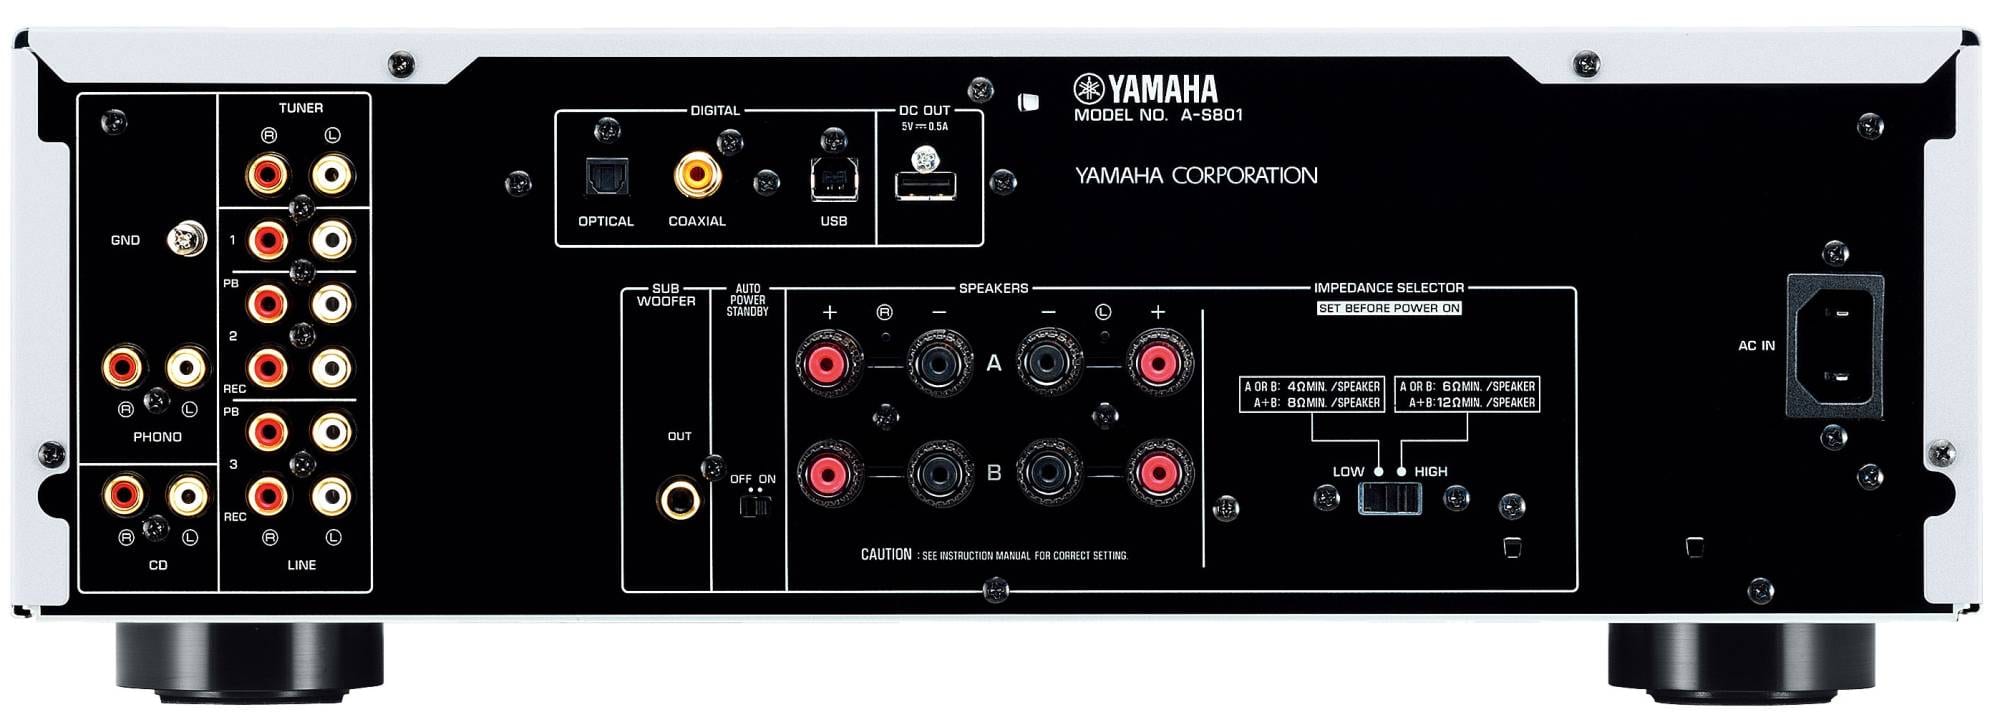 Yamaha A-S801 zwart - achterkant - Stereo versterker